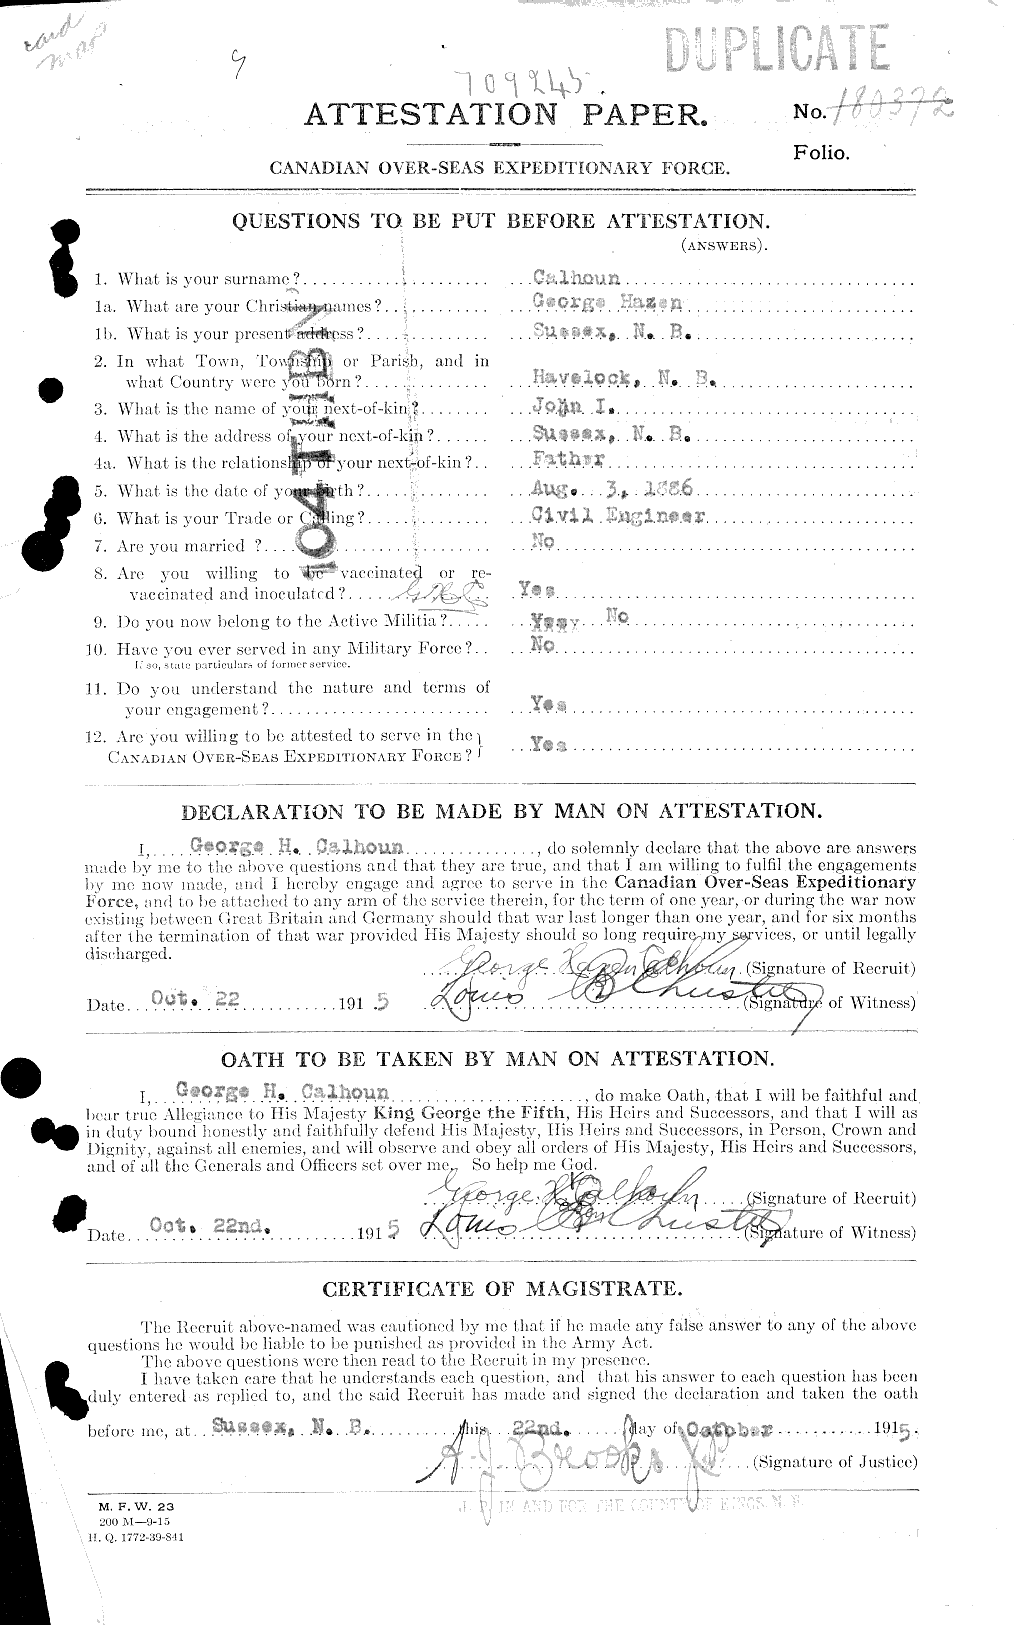 Dossiers du Personnel de la Première Guerre mondiale - CEC 001146a